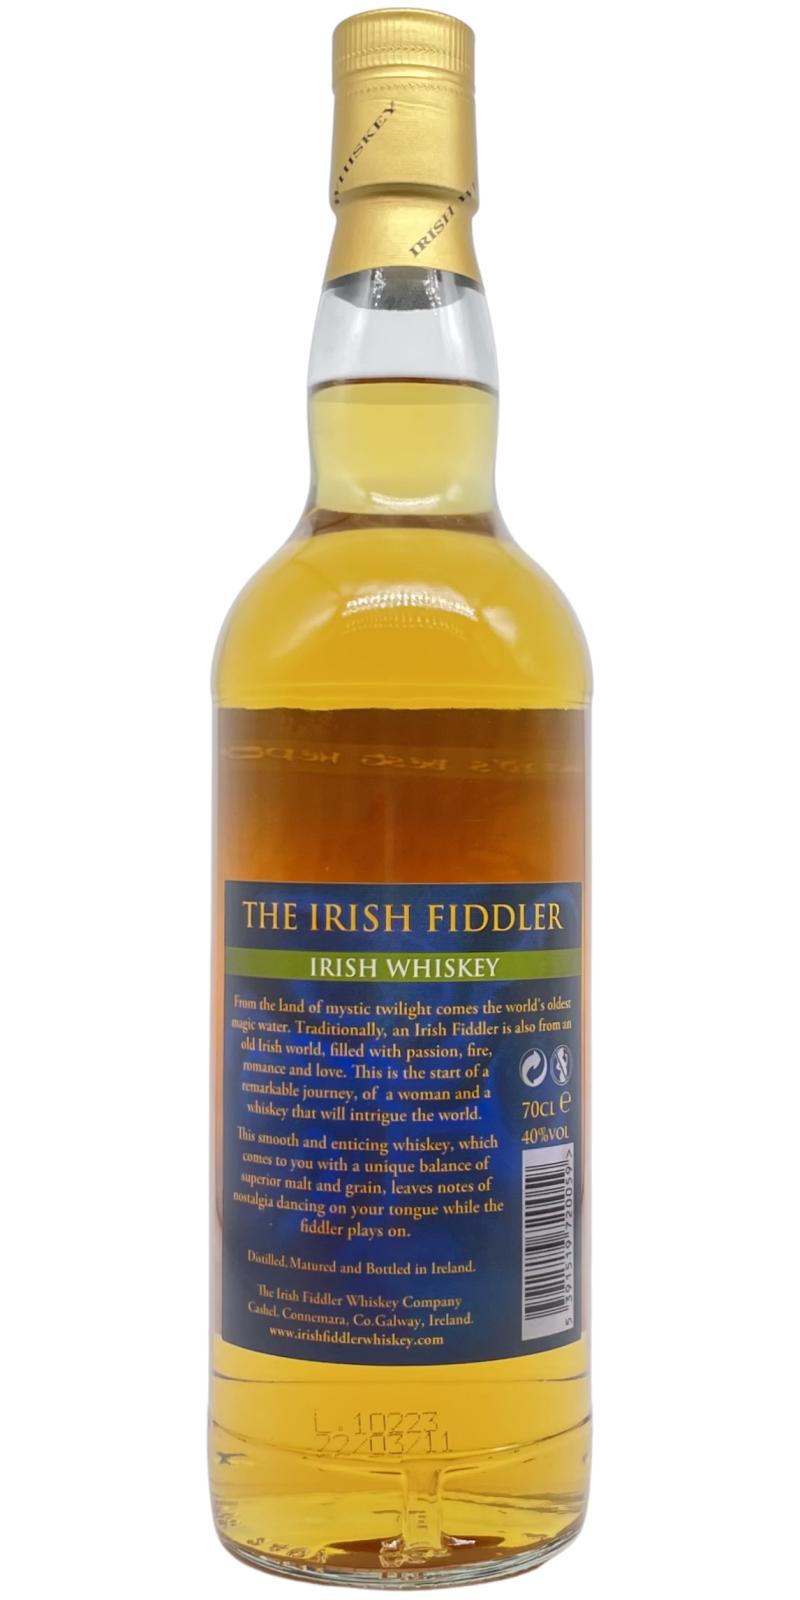 The Irish Fiddler Irish Whiskey